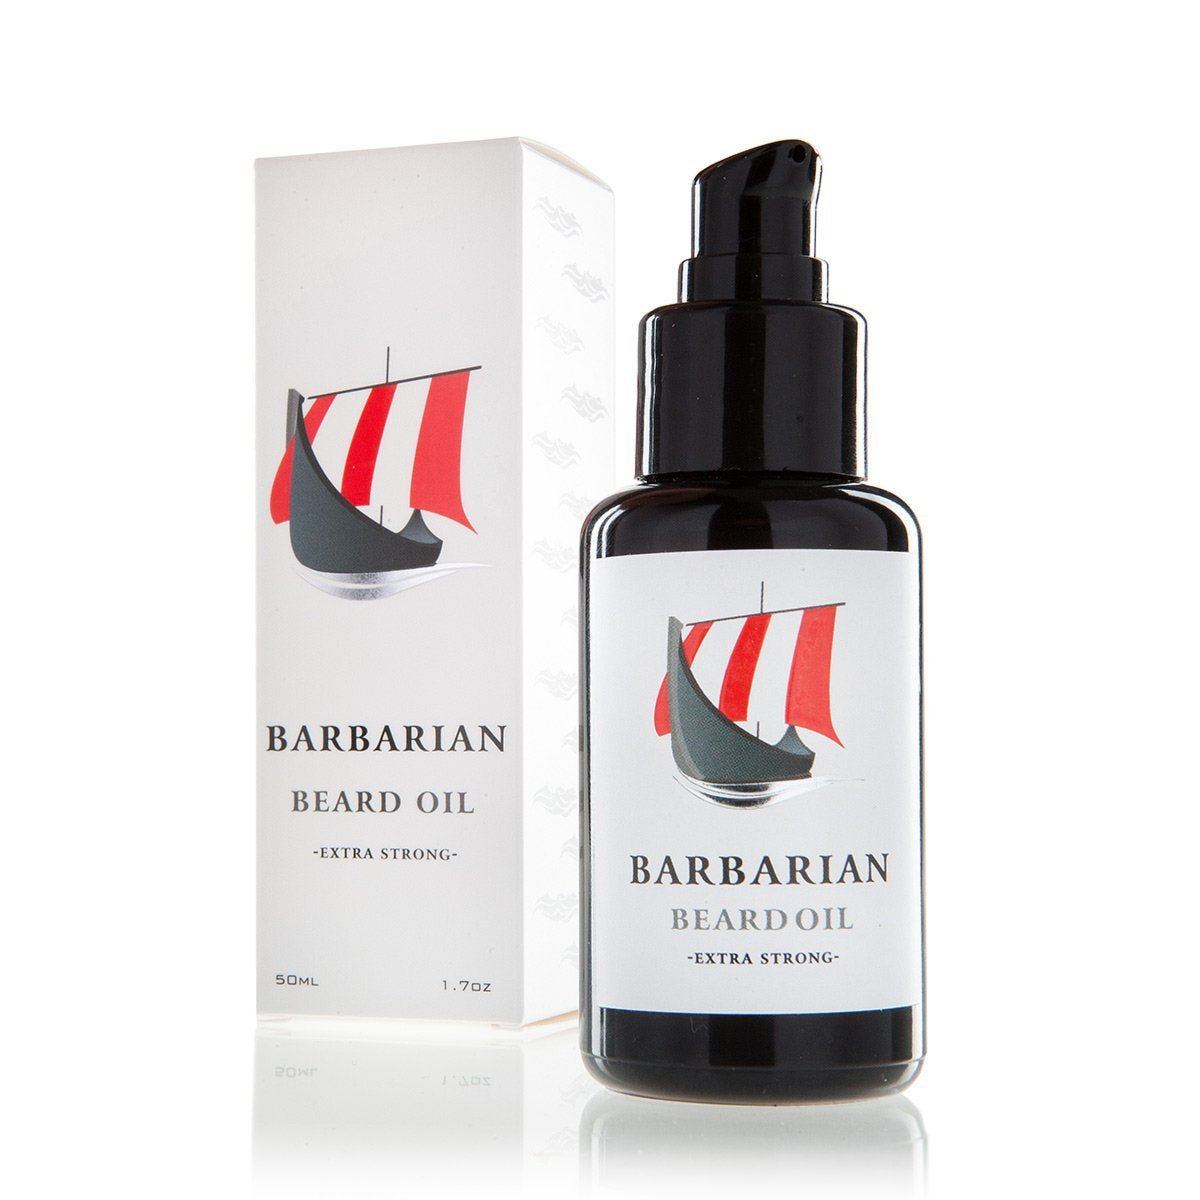 Barbarian Beard Oil - Duft: männlich-sinnlich-frisch mit Amber und Bergamotte - Made in Germany - vegan